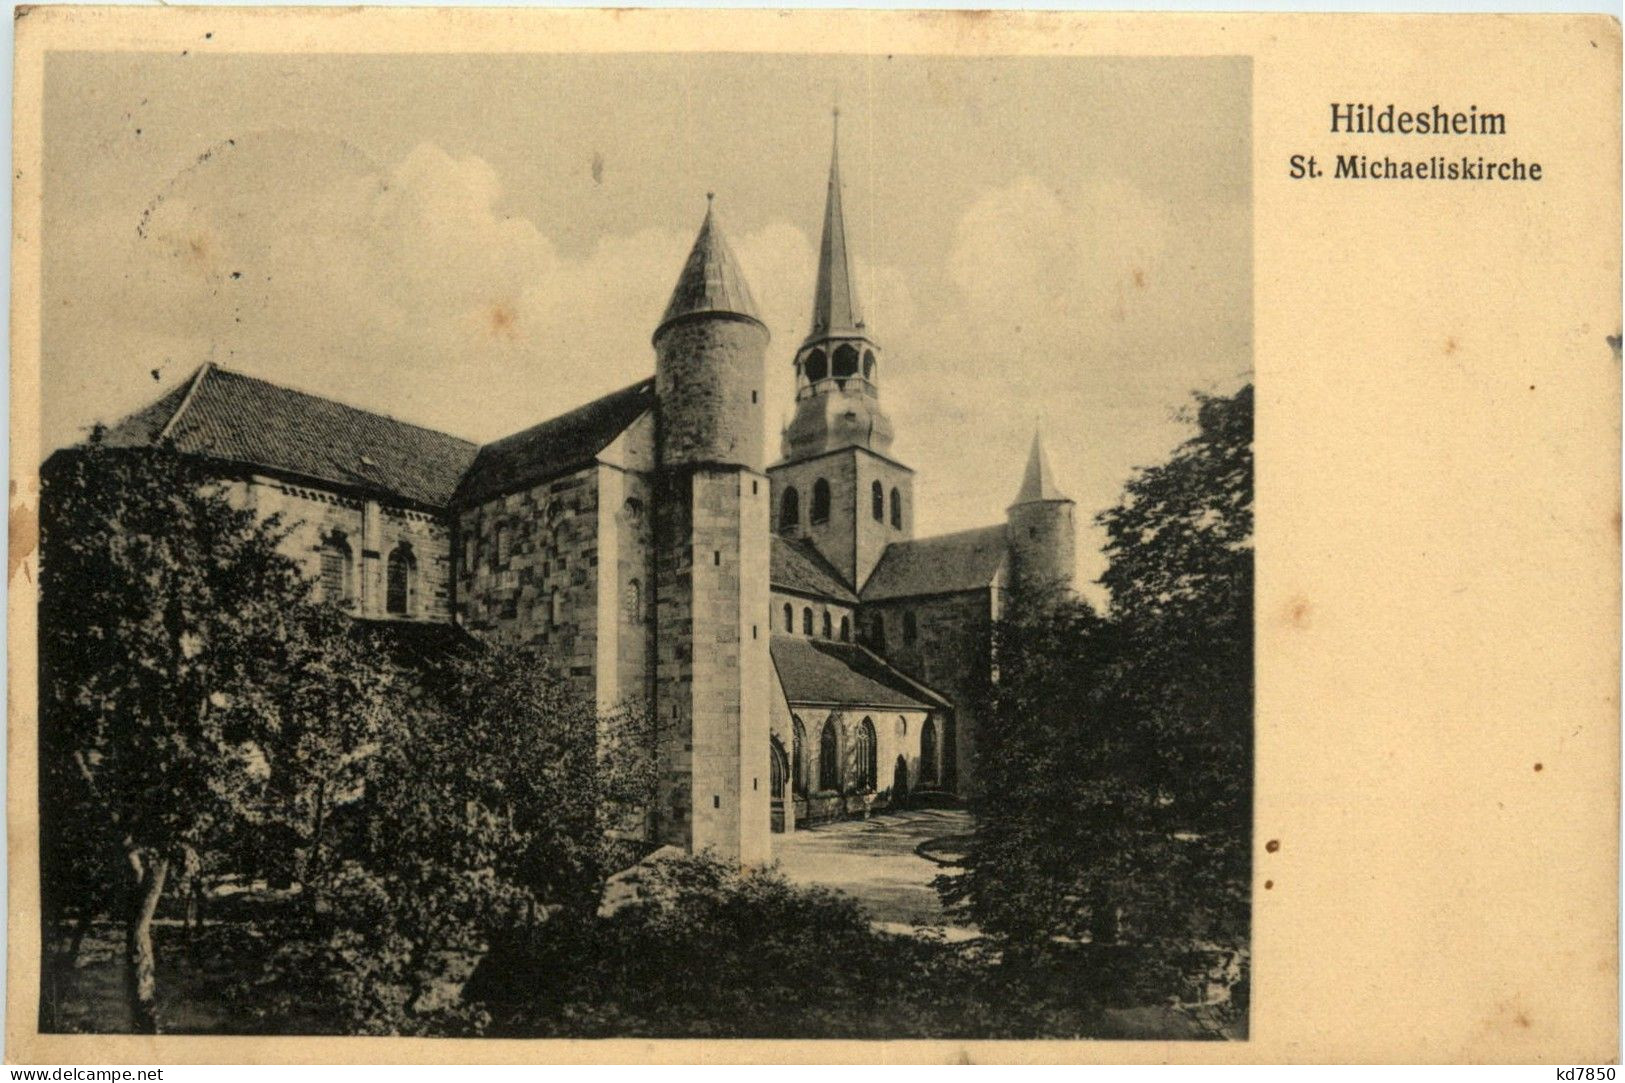 Hildesheim - St. Michaeliskirche - Hildesheim